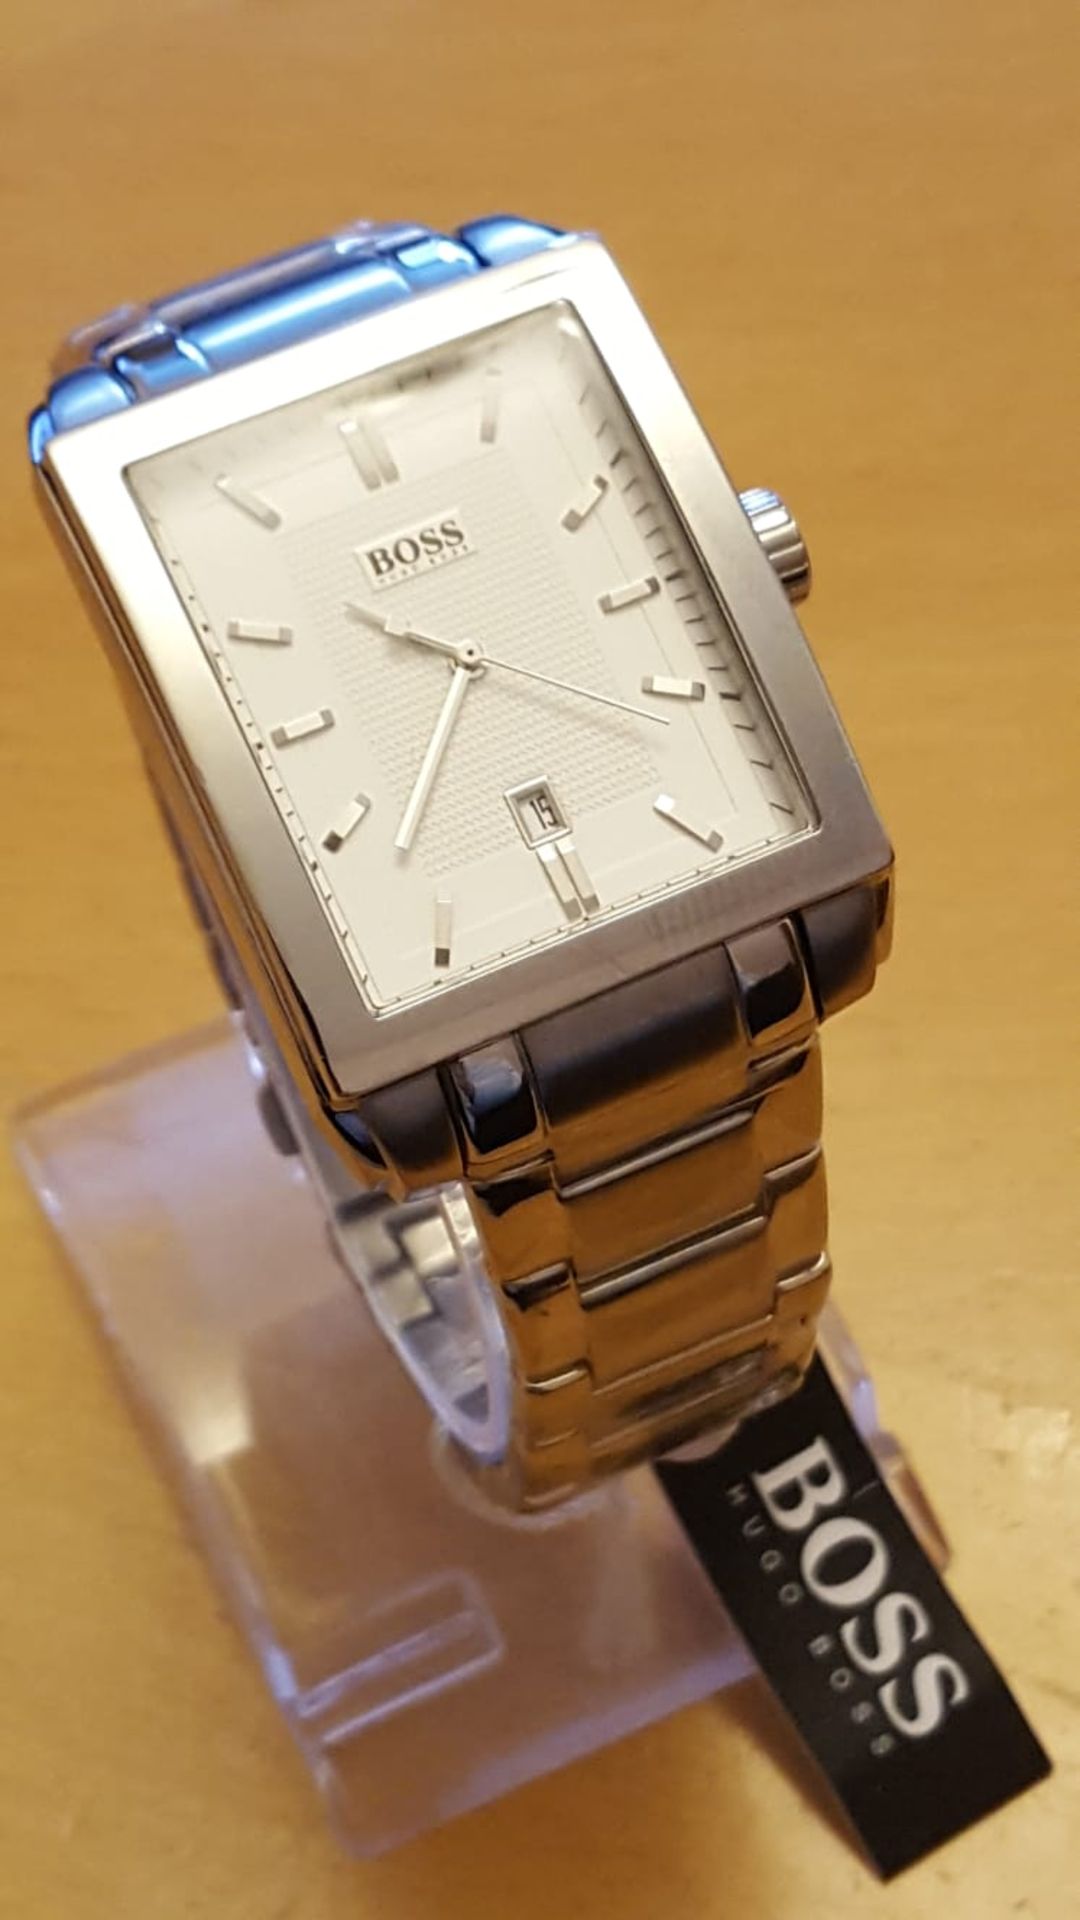 Brand New Hugo Boss Mens Classic åwatch, Hb1512772, Rectangular Stainless Steel Bracelet Watch,